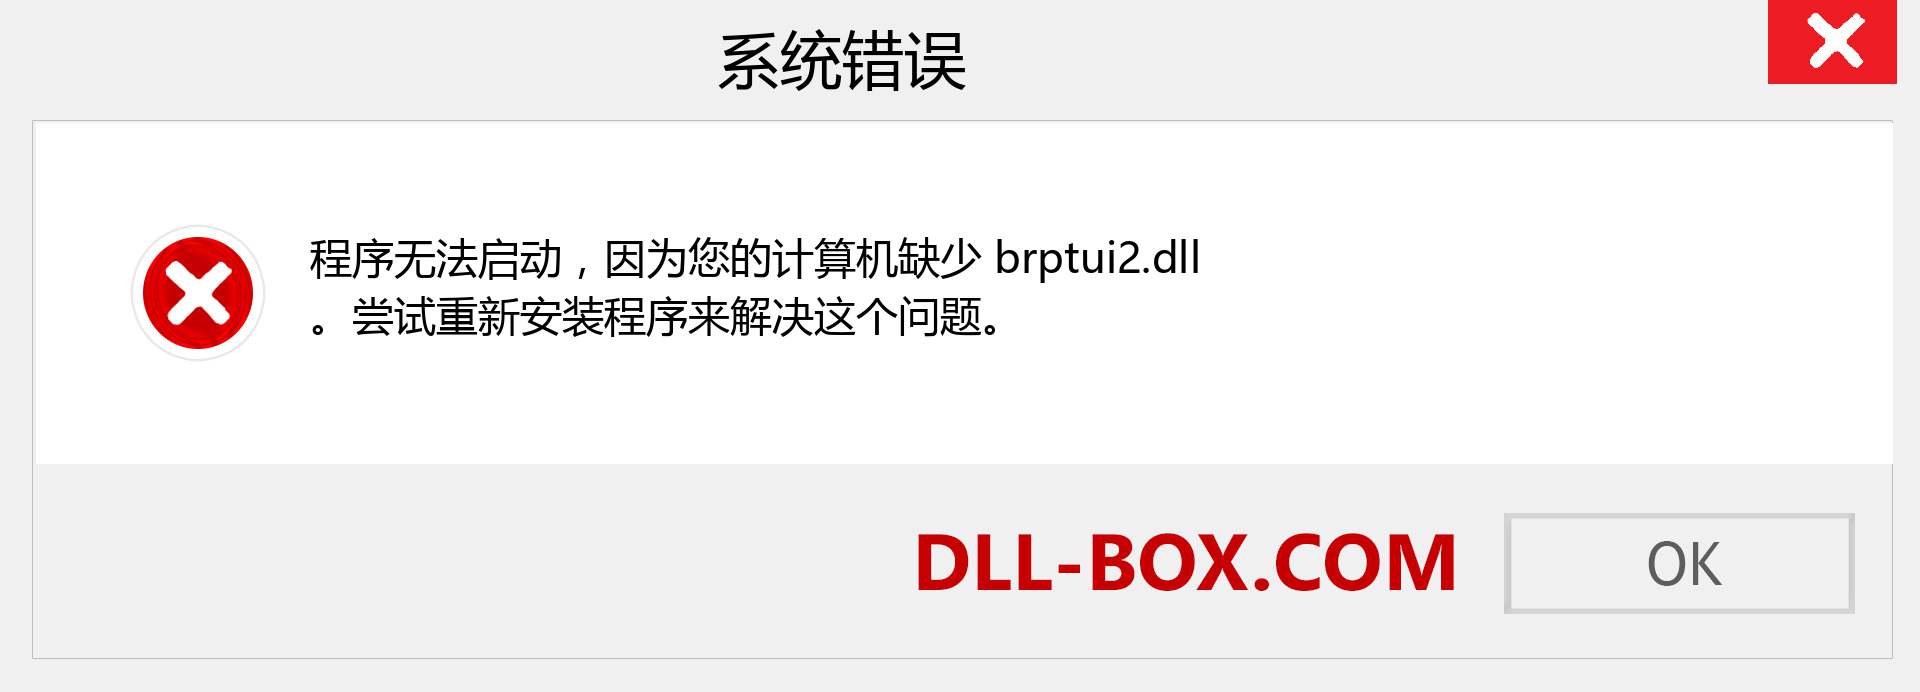 brptui2.dll 文件丢失？。 适用于 Windows 7、8、10 的下载 - 修复 Windows、照片、图像上的 brptui2 dll 丢失错误